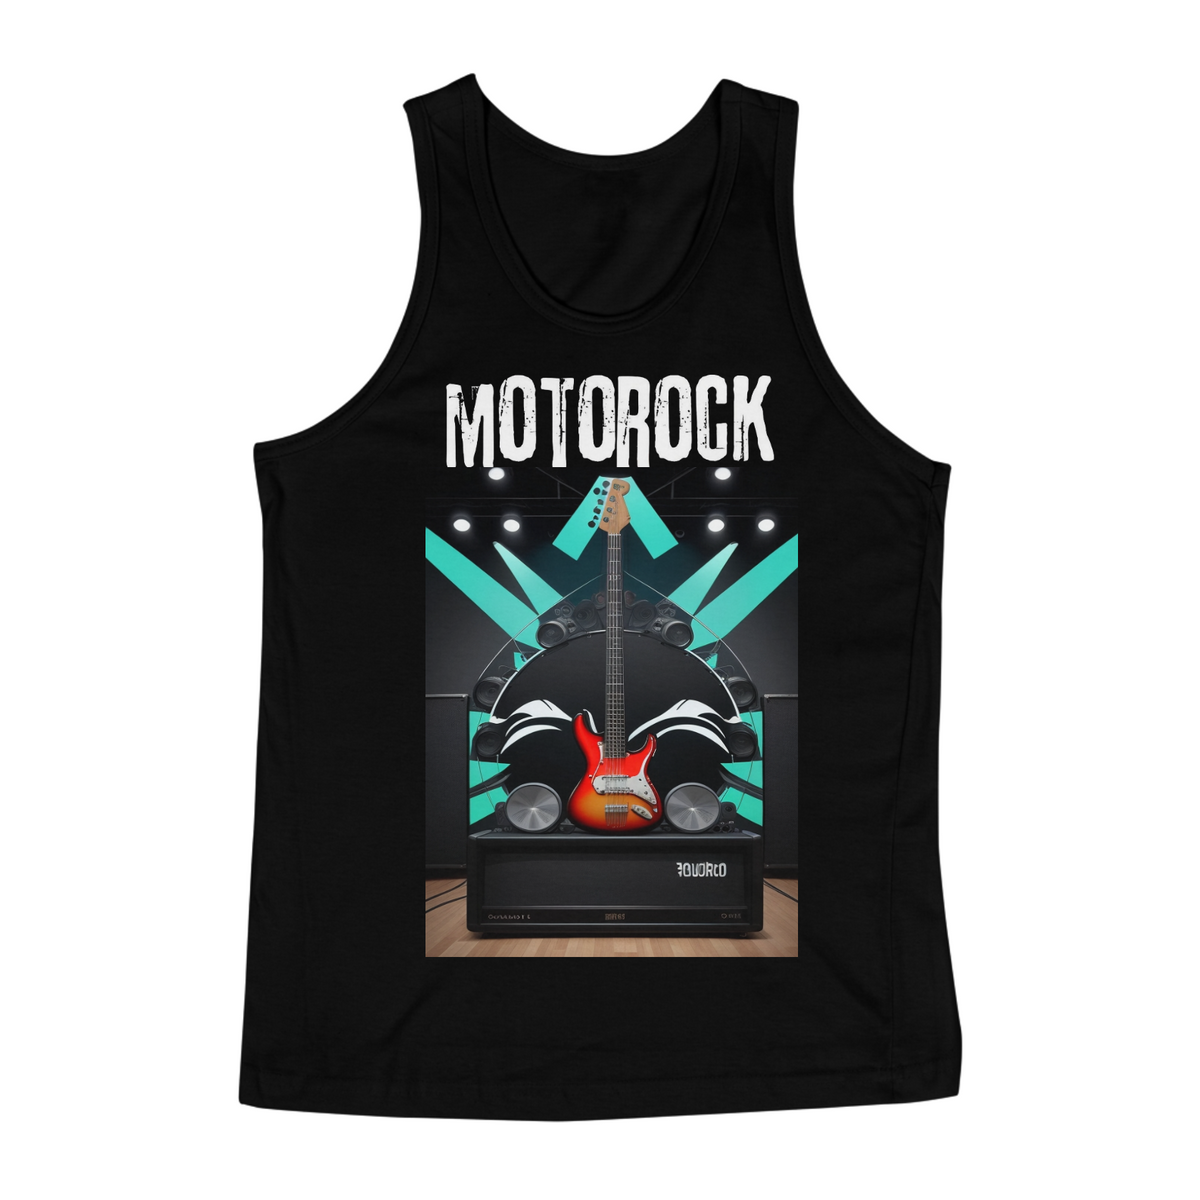 Nome do produto: ROCK BASS MOTOROCK